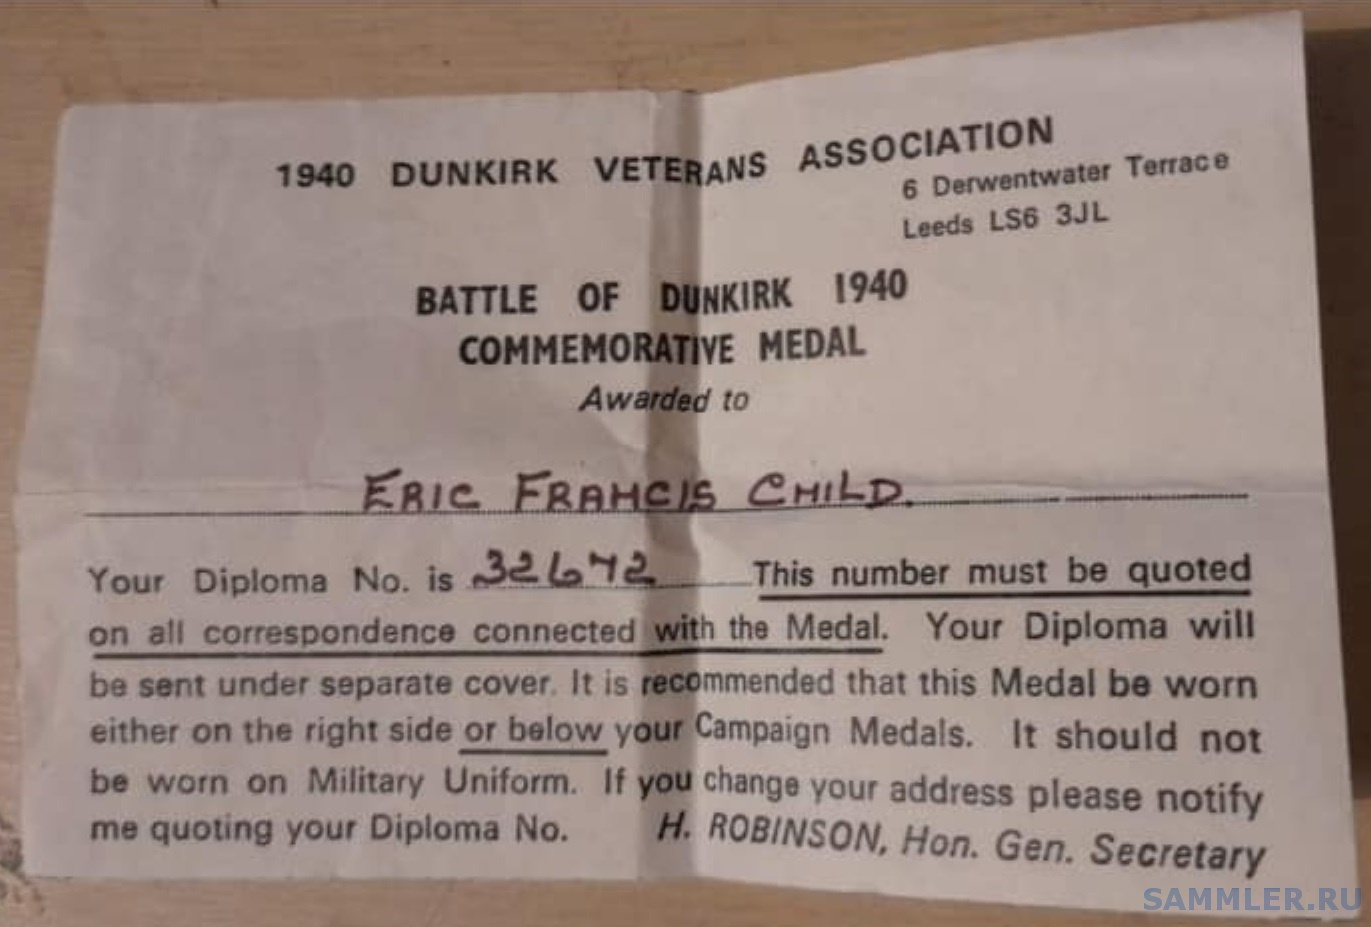 Cover letter for Dunkirk comm medal.jpg